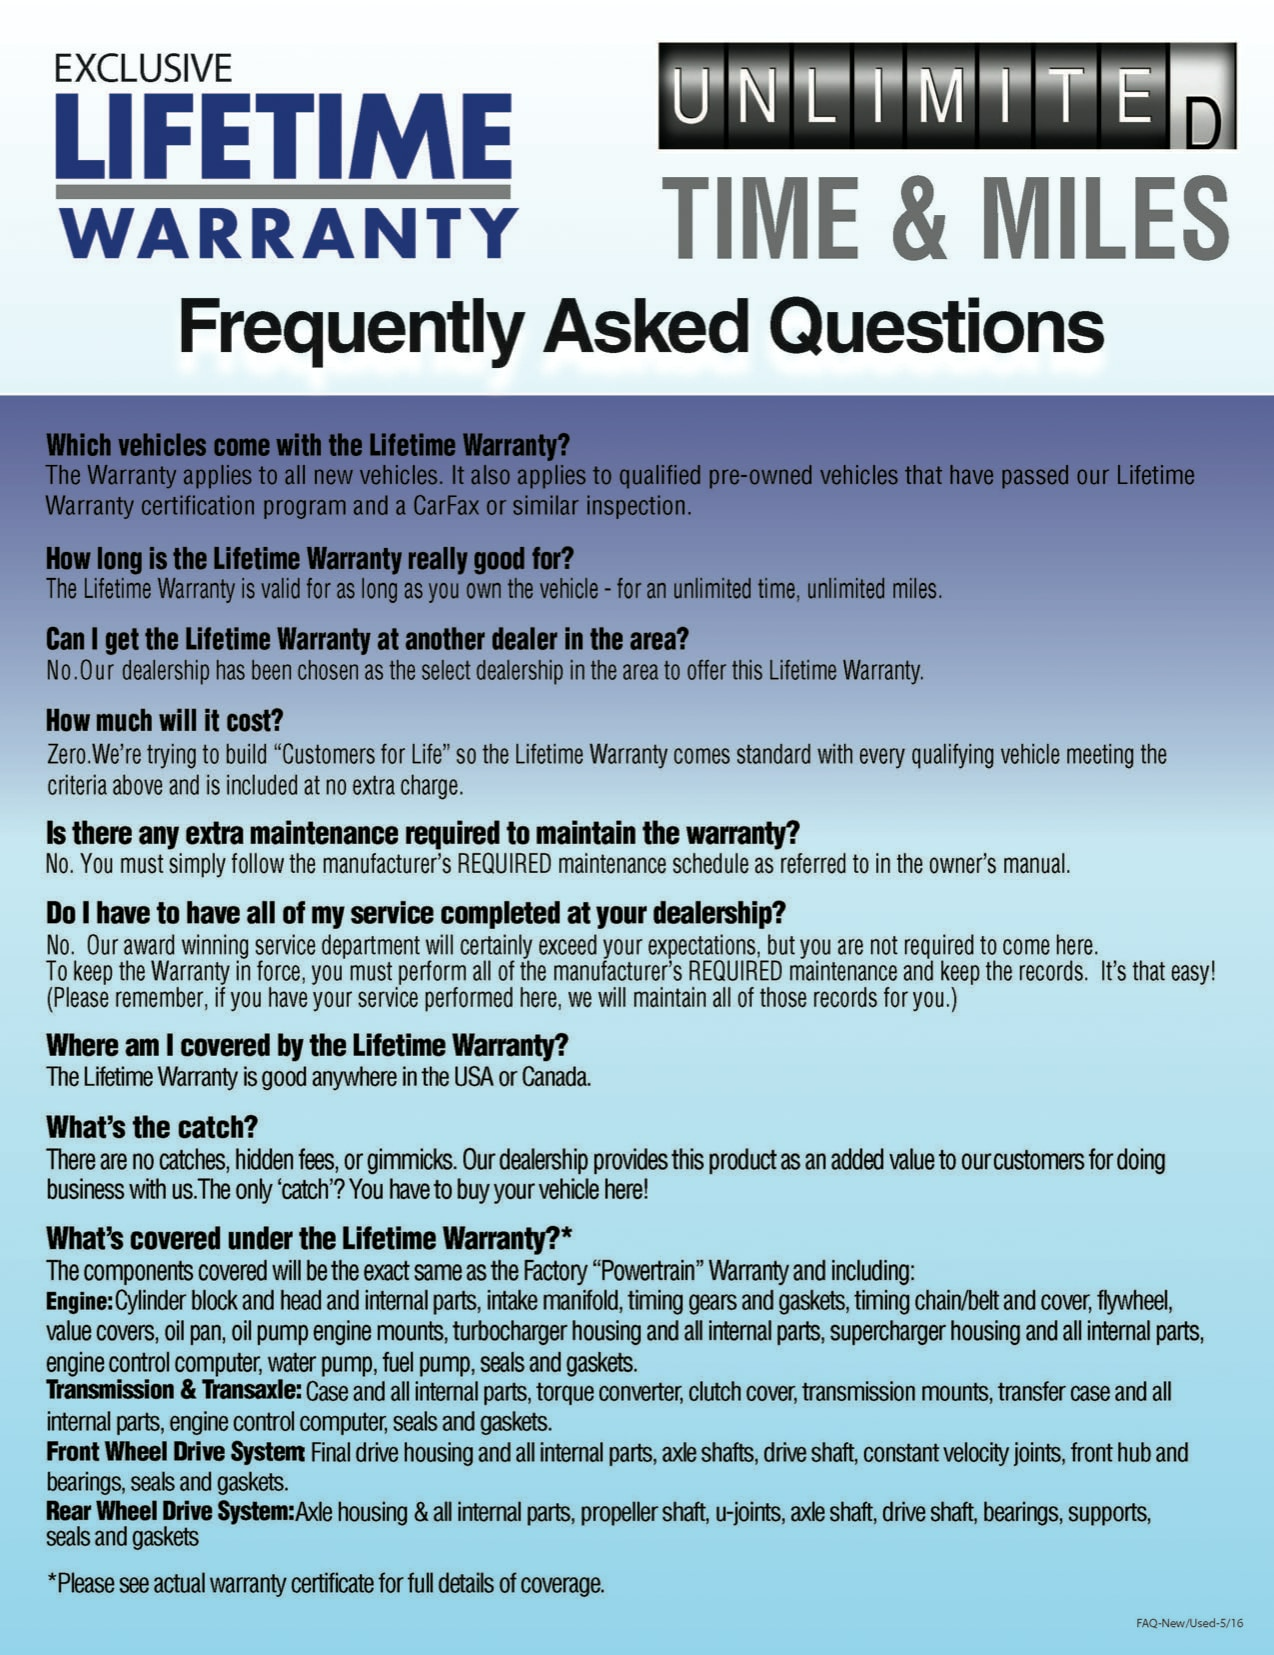 Warranty FAQ